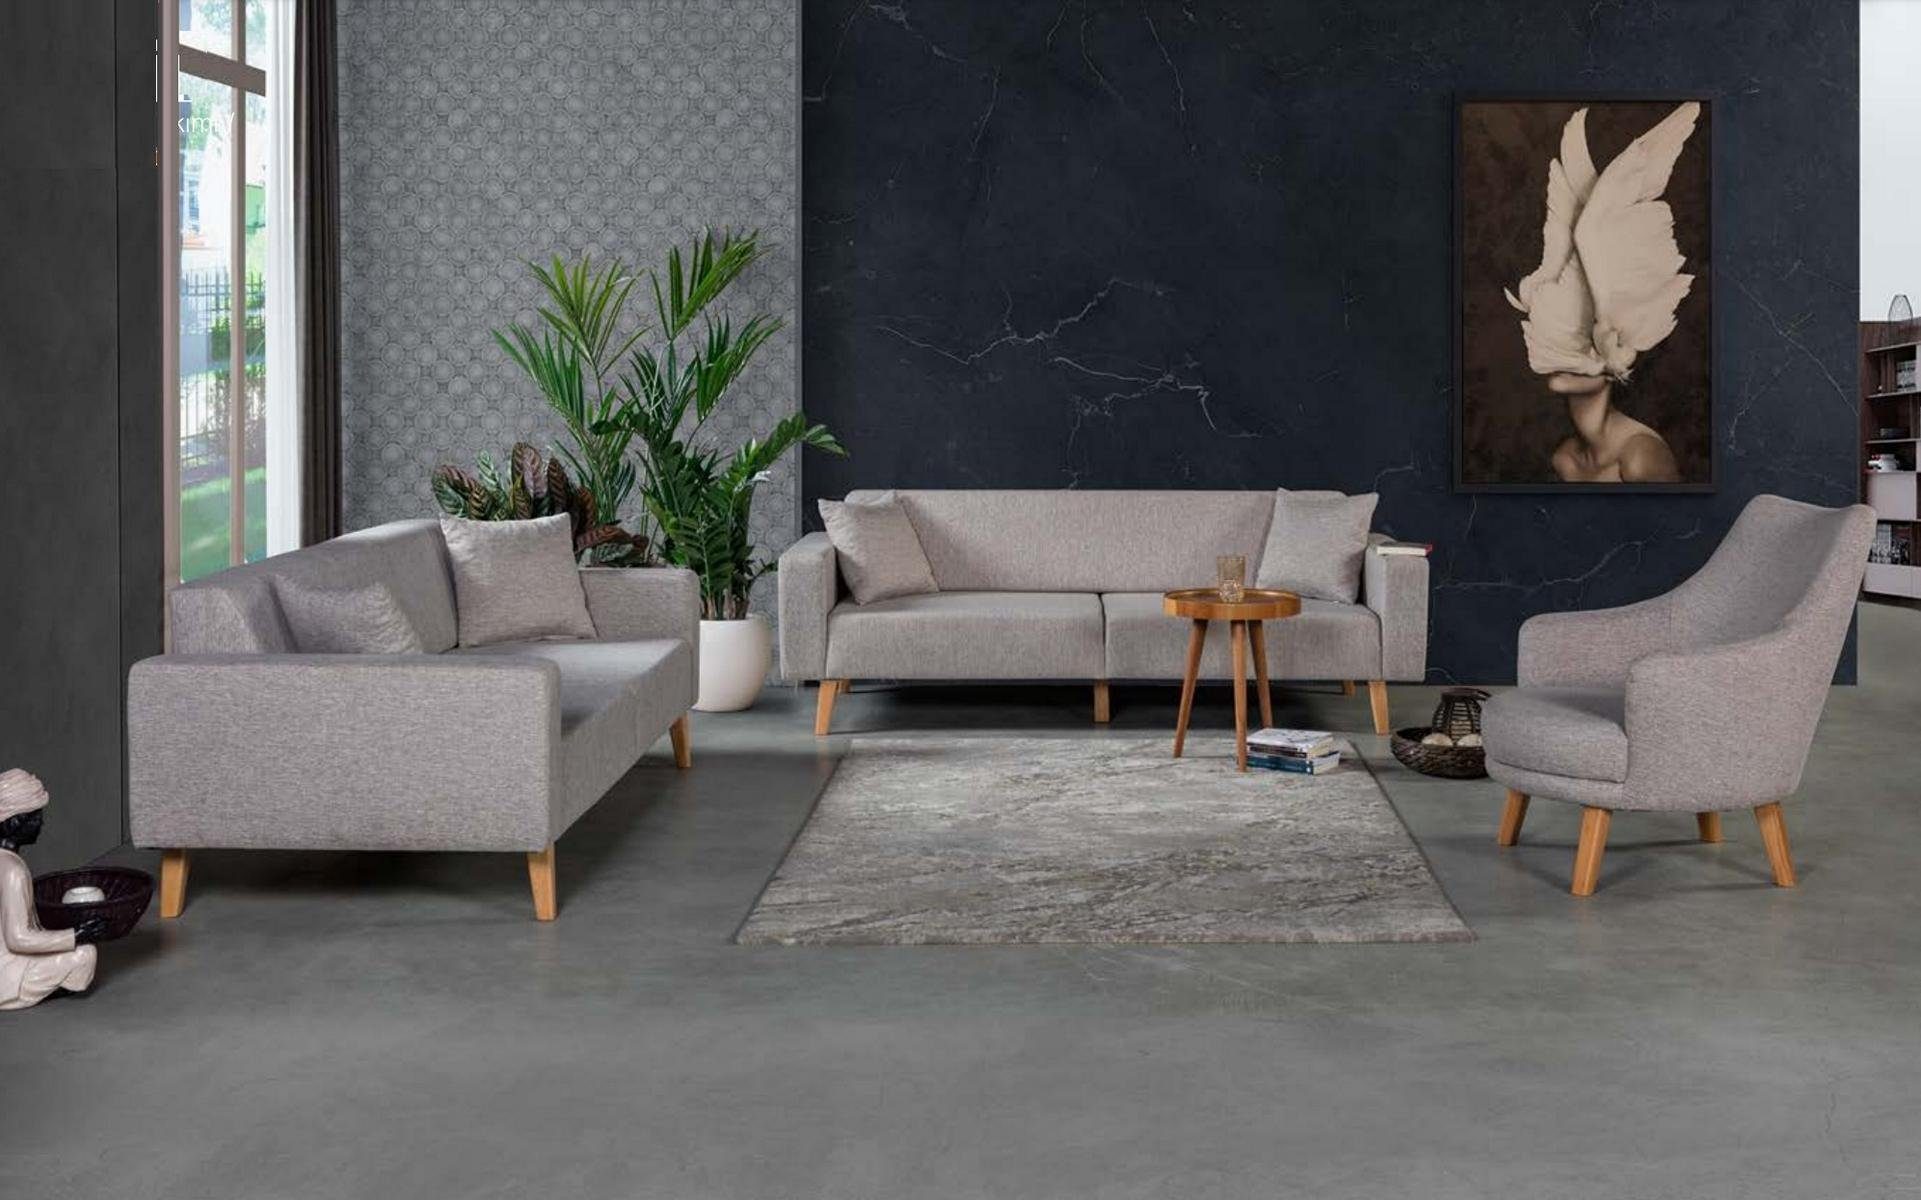 Europe JVmoebel Textil Sofa Made Grau, Wohnzimmer Dreisitzer Couchen in Sofa Polster Sitz